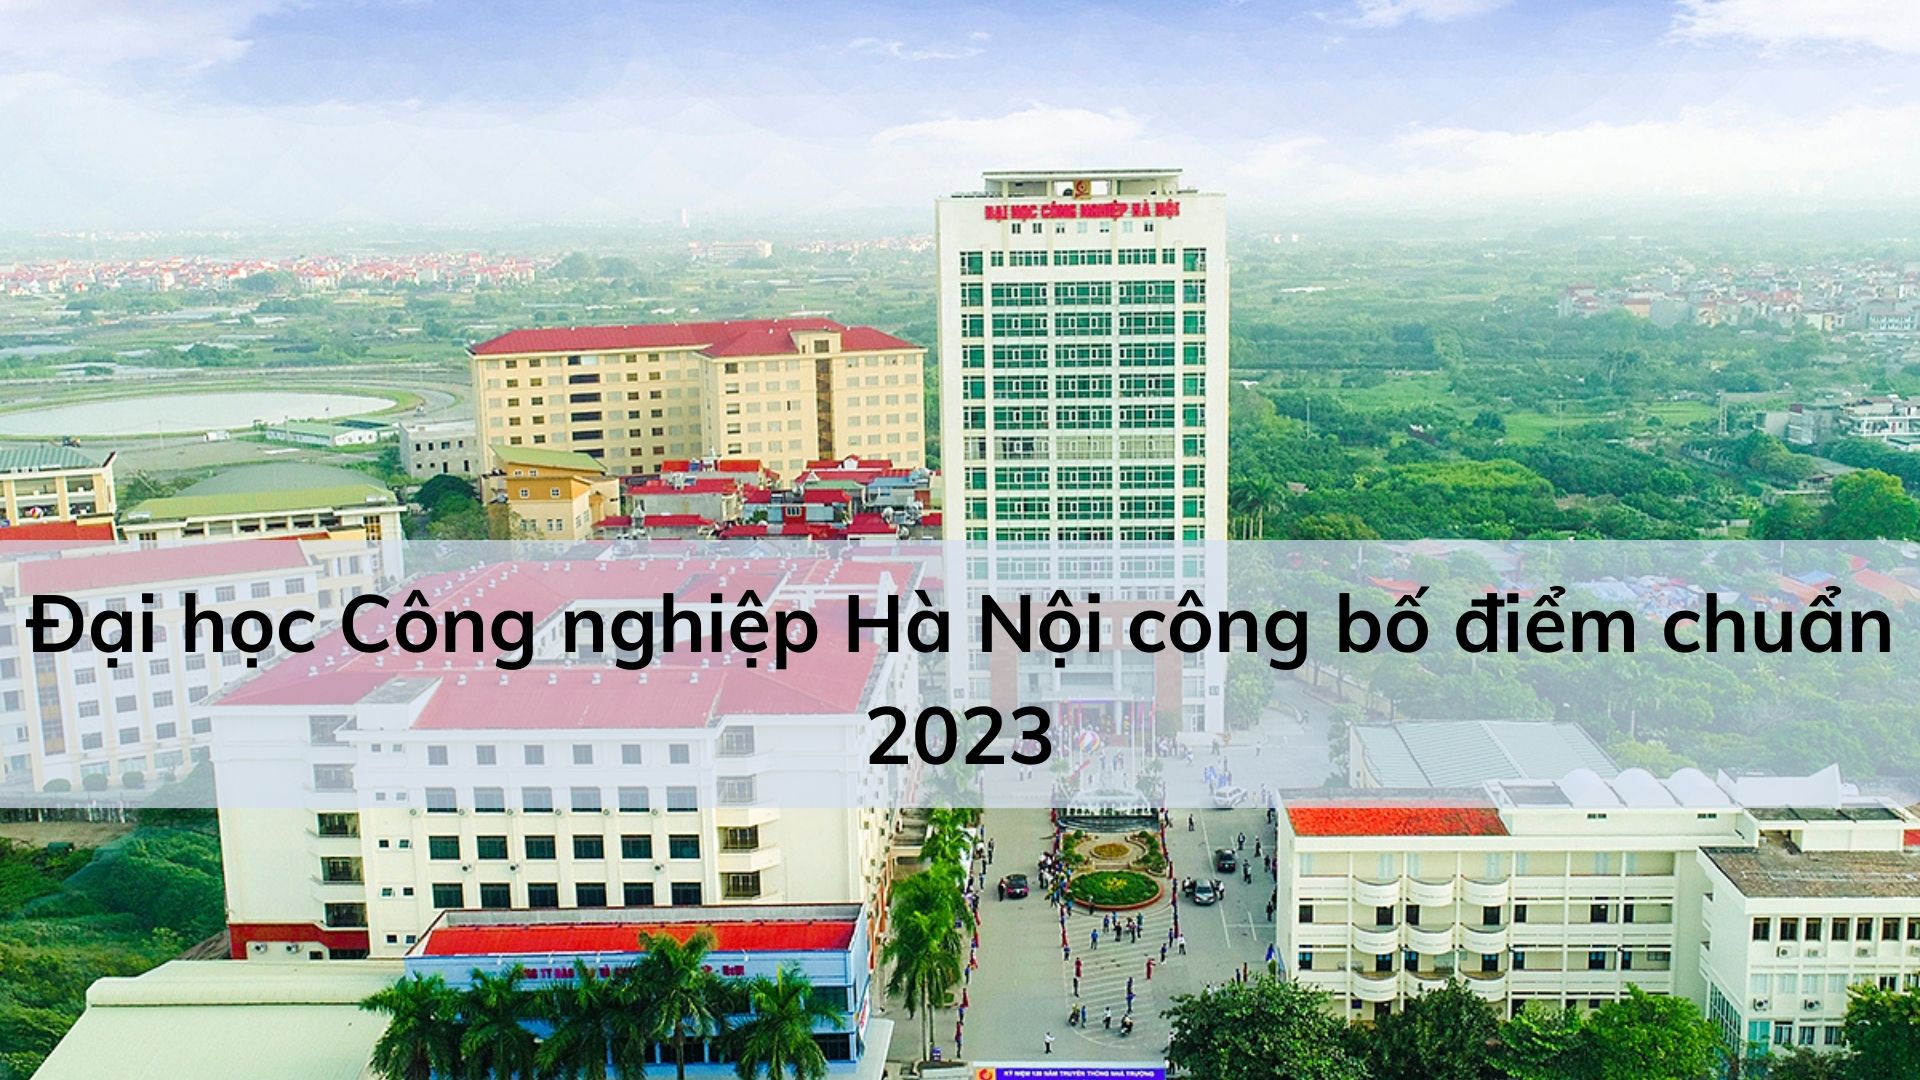 Đại học Công nghiệp Hà Nội điểm chuẩn 2023 công bố mới nhất